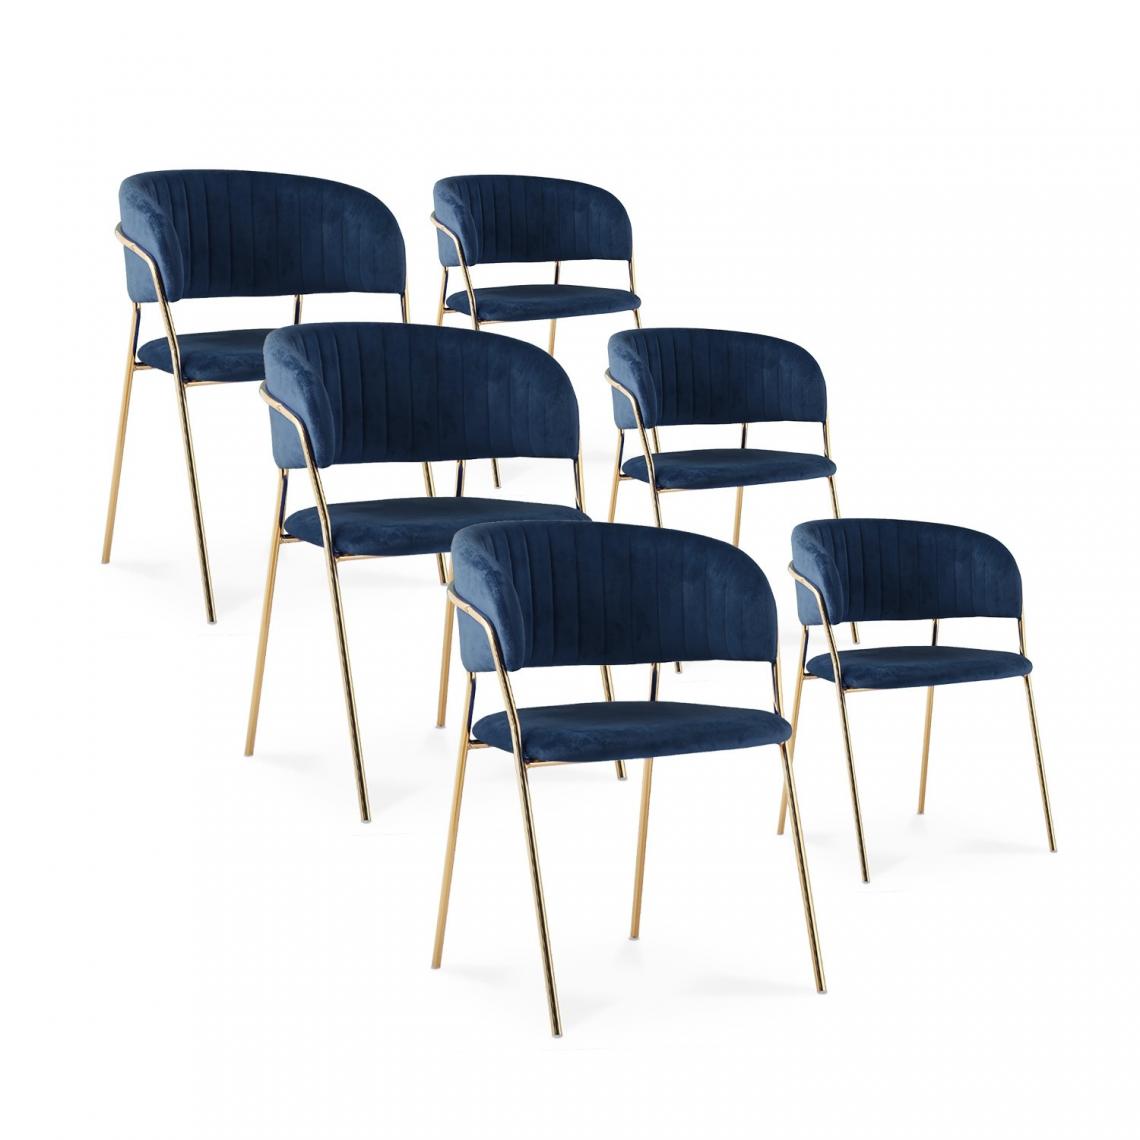 marque generique - Lot de 6 chaises Margaux velours bleu pieds or - Chaises